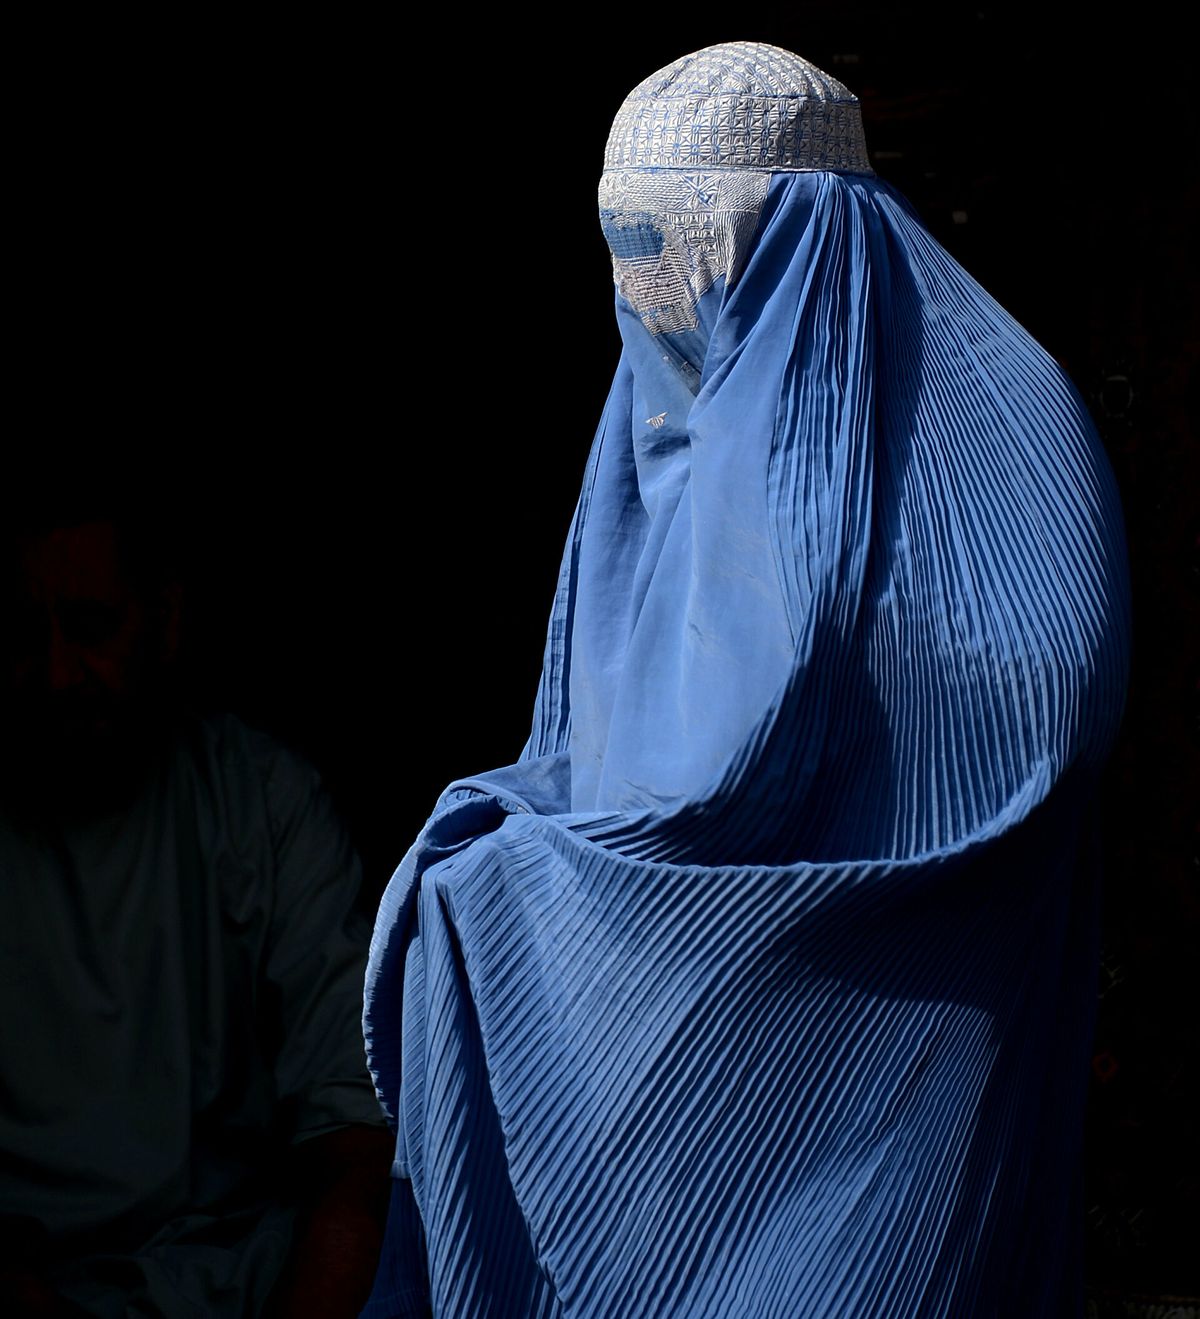 El burka es el velo que cubre todo el cuerpo de las mujeres musulmanas y solo tienen una rejilla para poder ver a la altura de los ojos